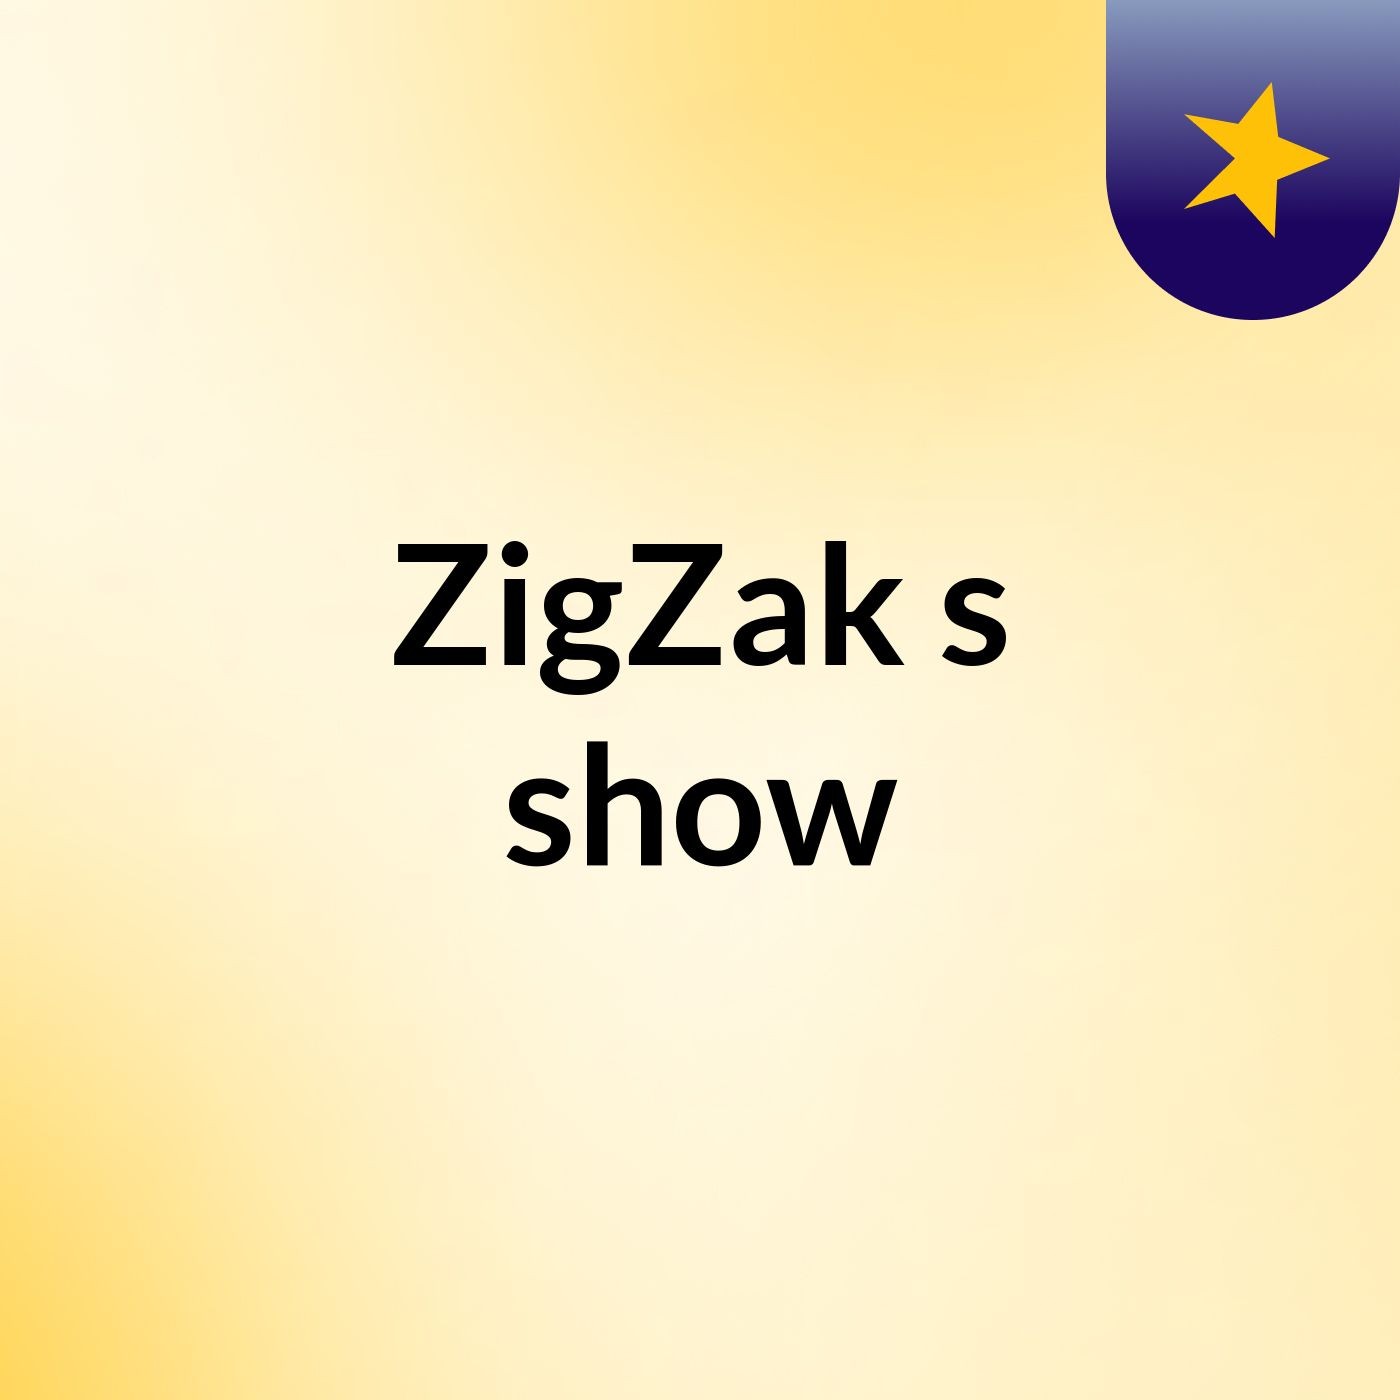 ZigZak's show